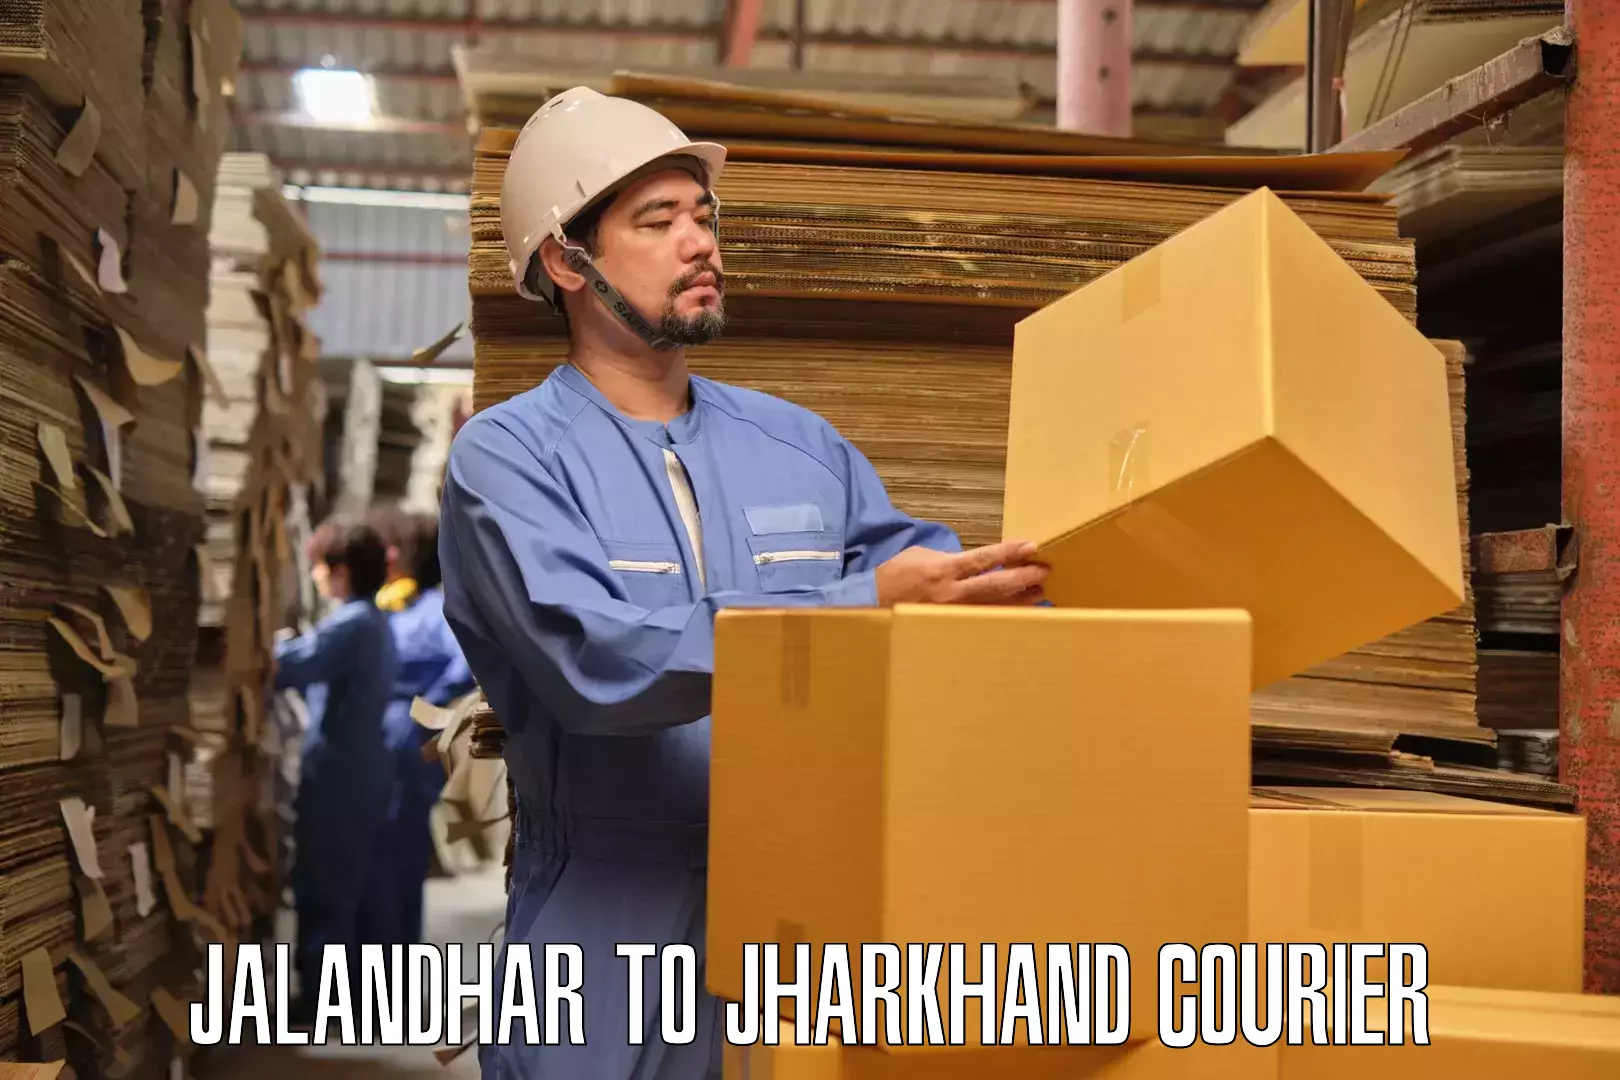 Furniture moving service Jalandhar to Jamshedpur